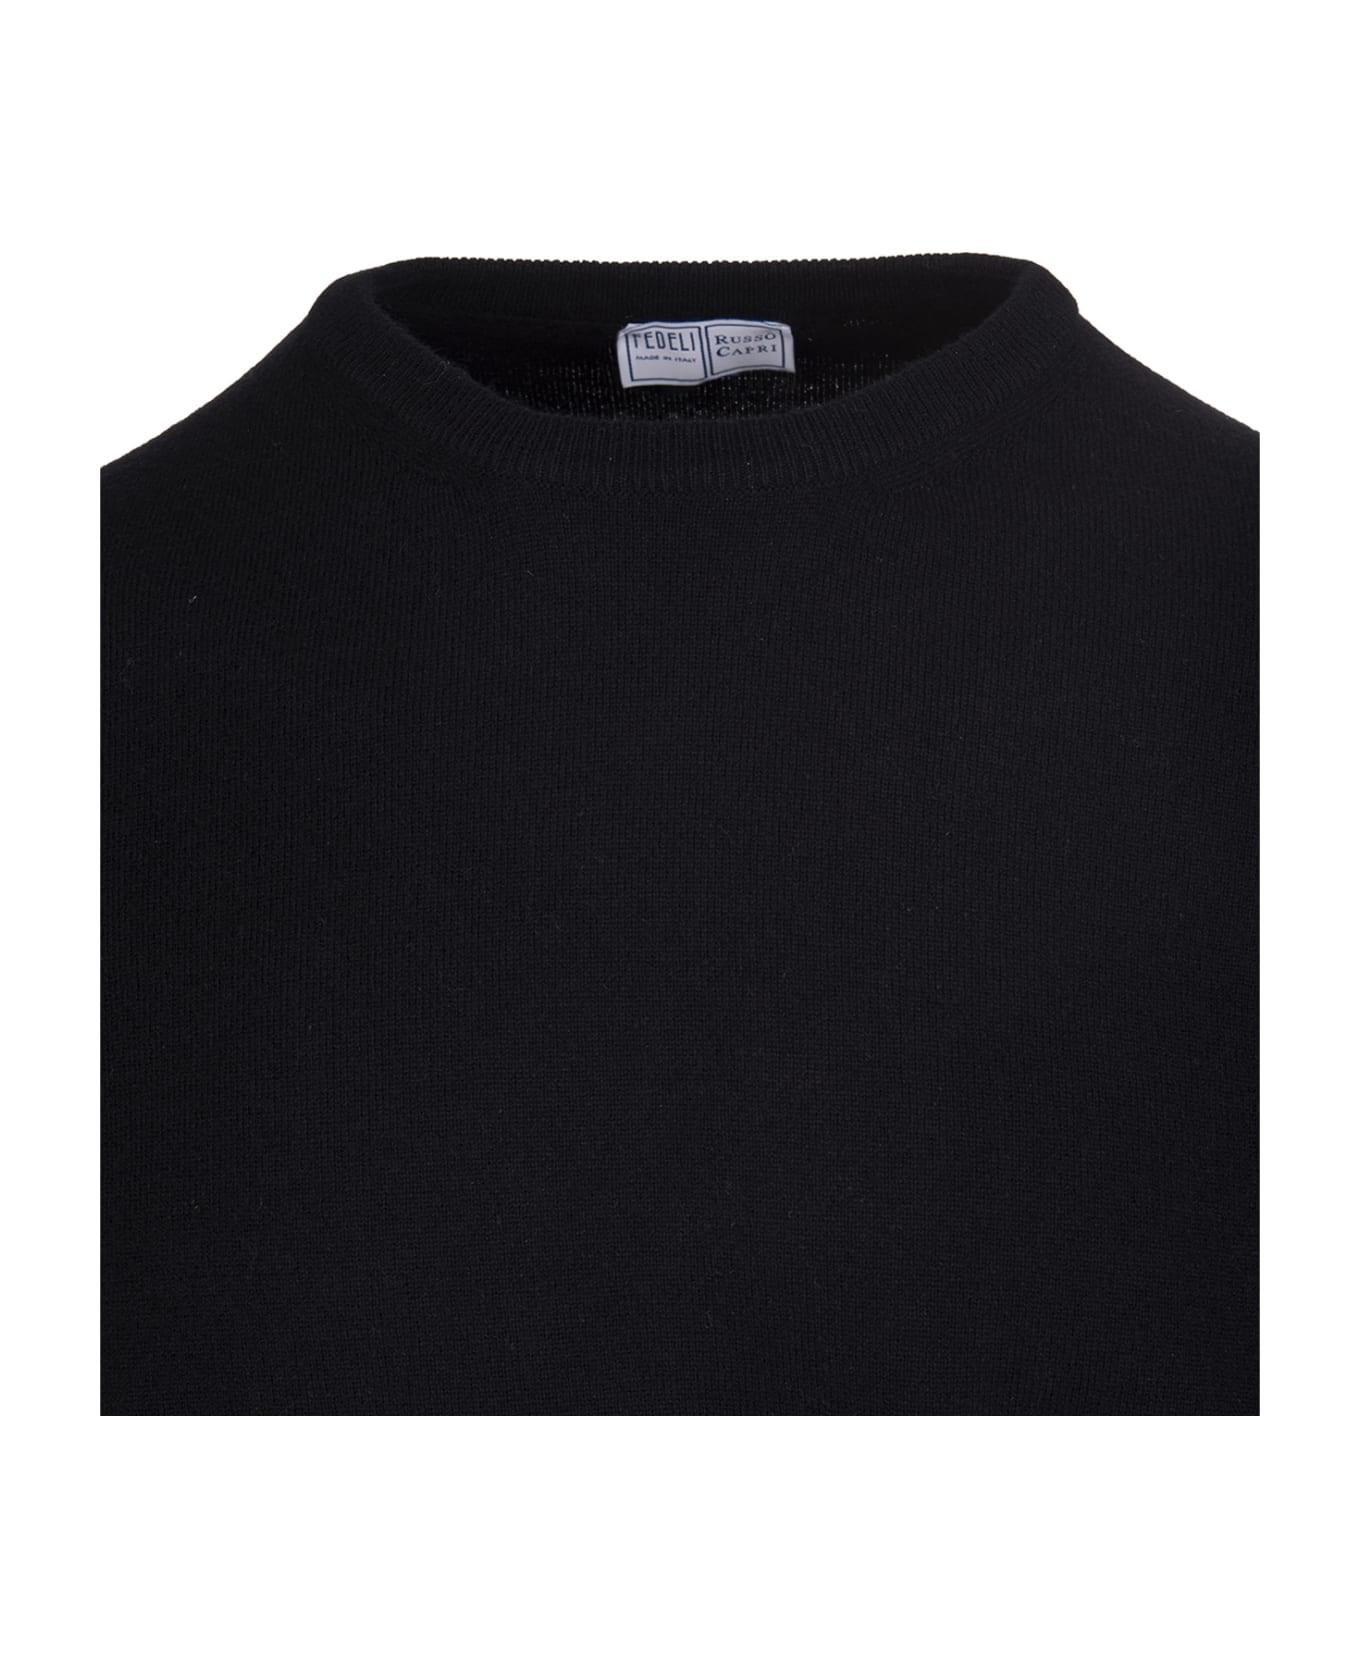 Fedeli Man Black Arg Vintage Pullover - Black